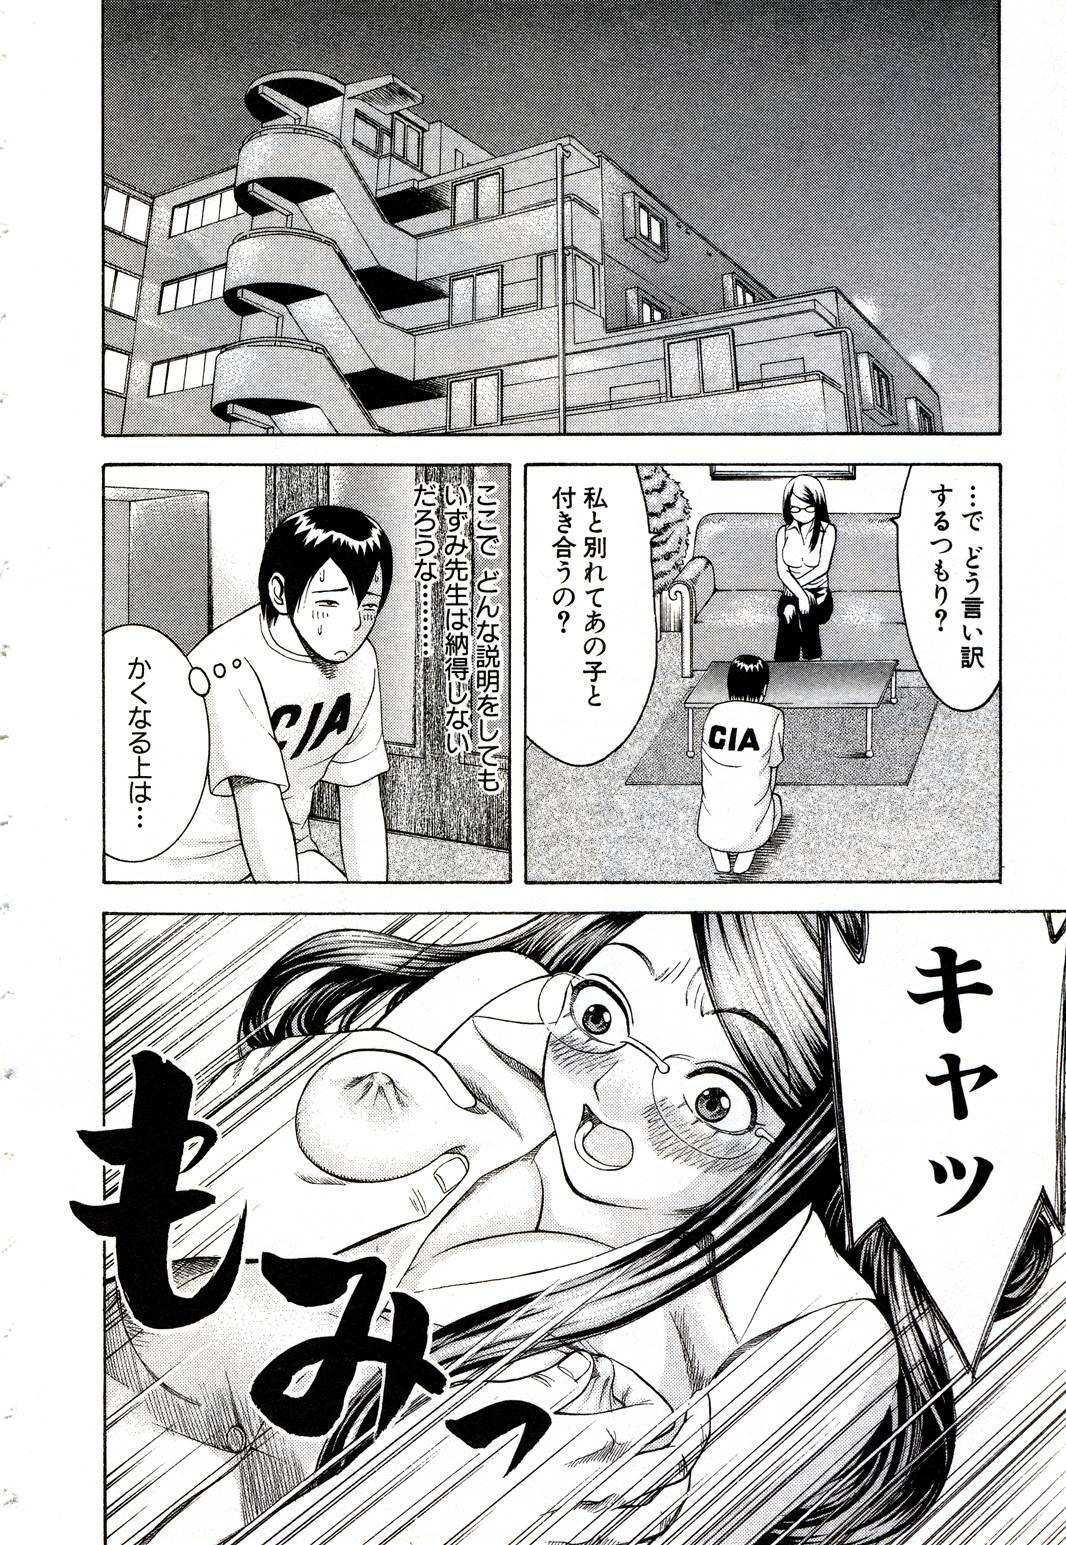 [Nakamura Sakyou] OnnaKyoshi Izumi page 39 full